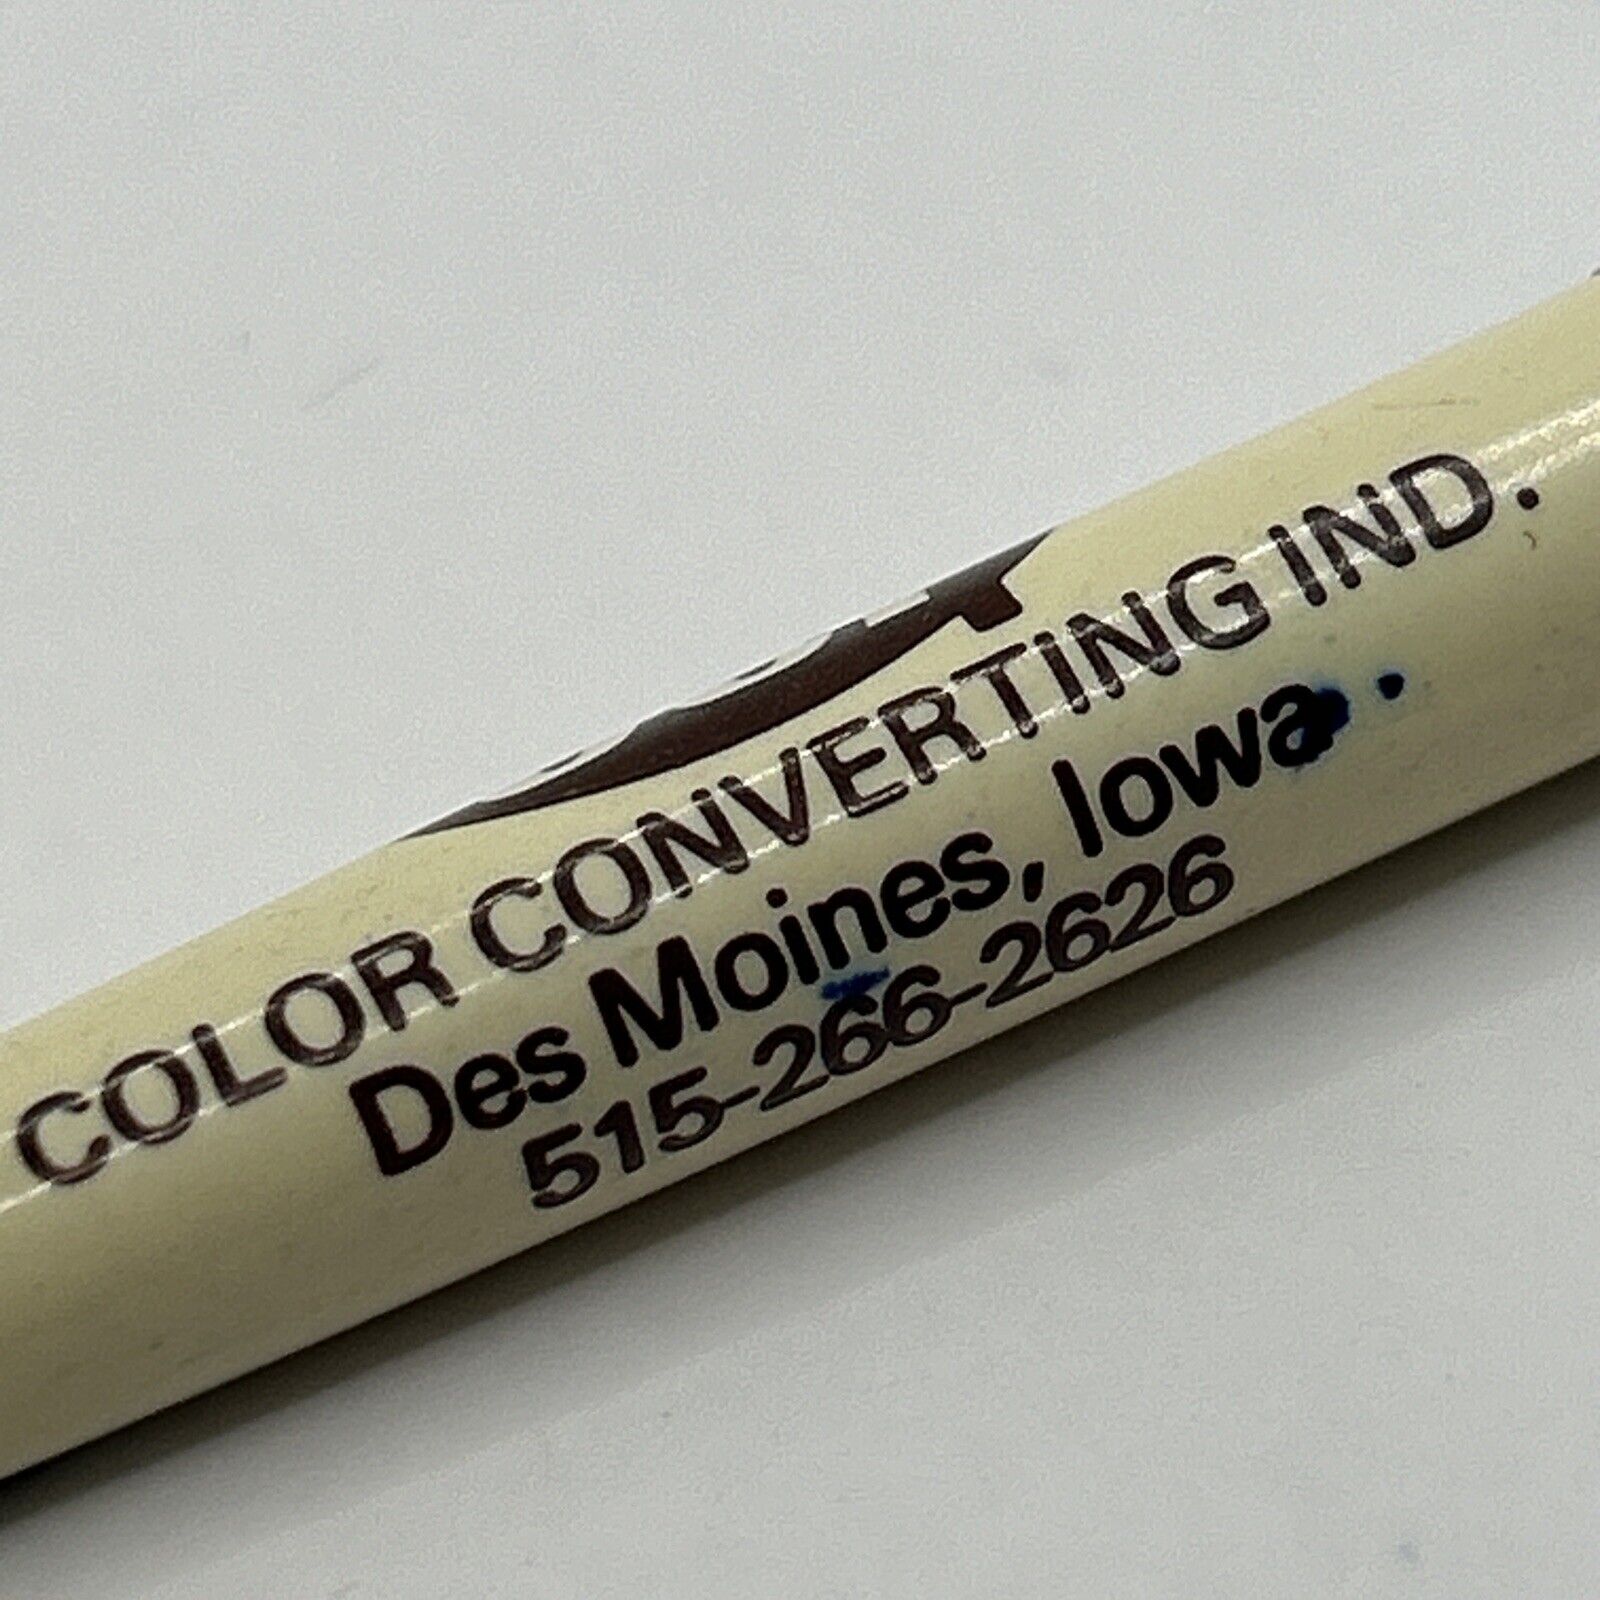 VTG Ballpoint Paper Mate Pen CCI Color Converting Industries Des Moines IA